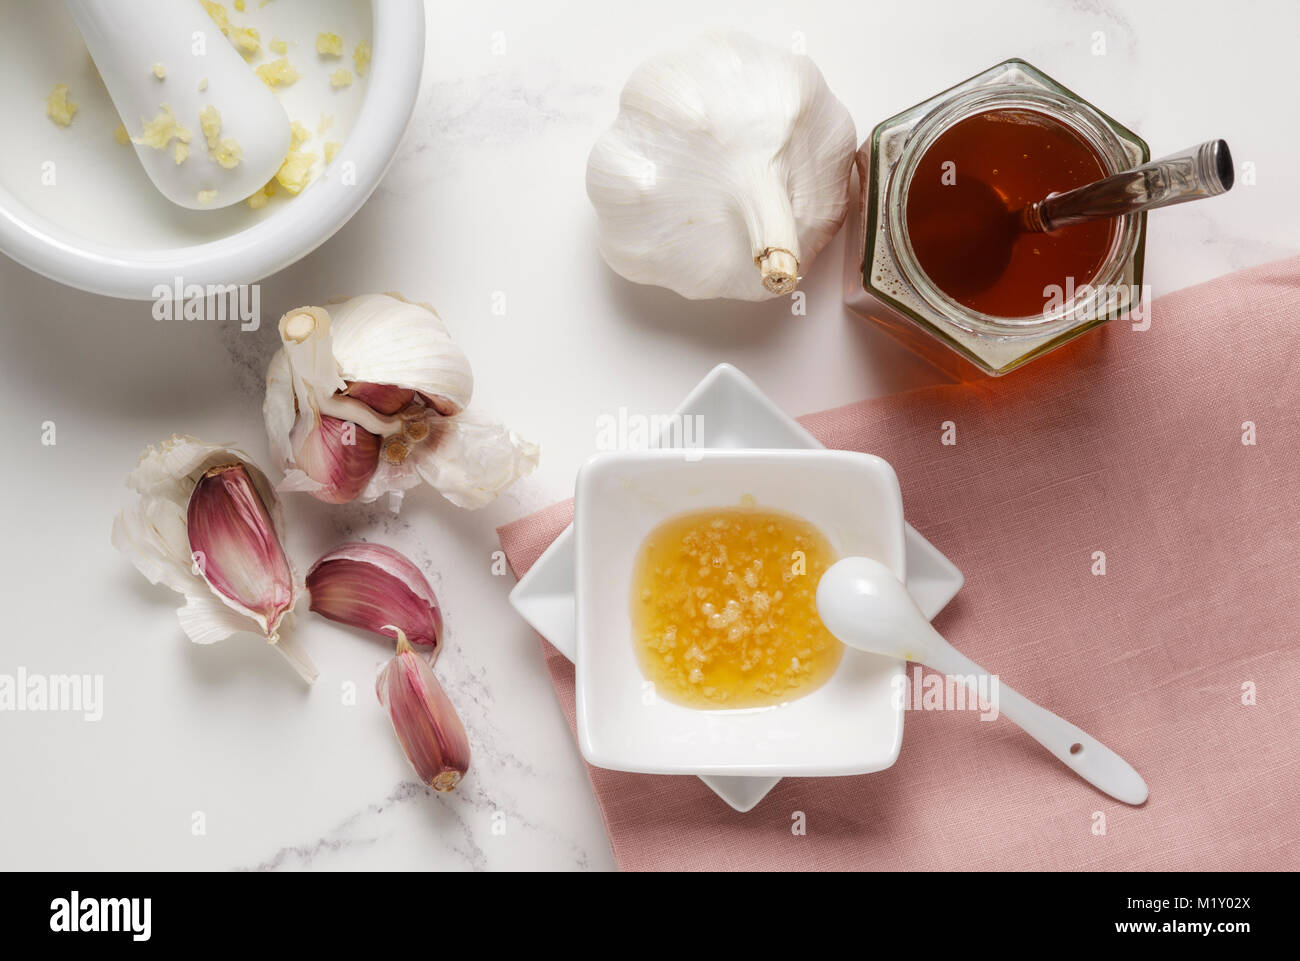 L'ail frais et le miel, un remède normal Banque D'Images